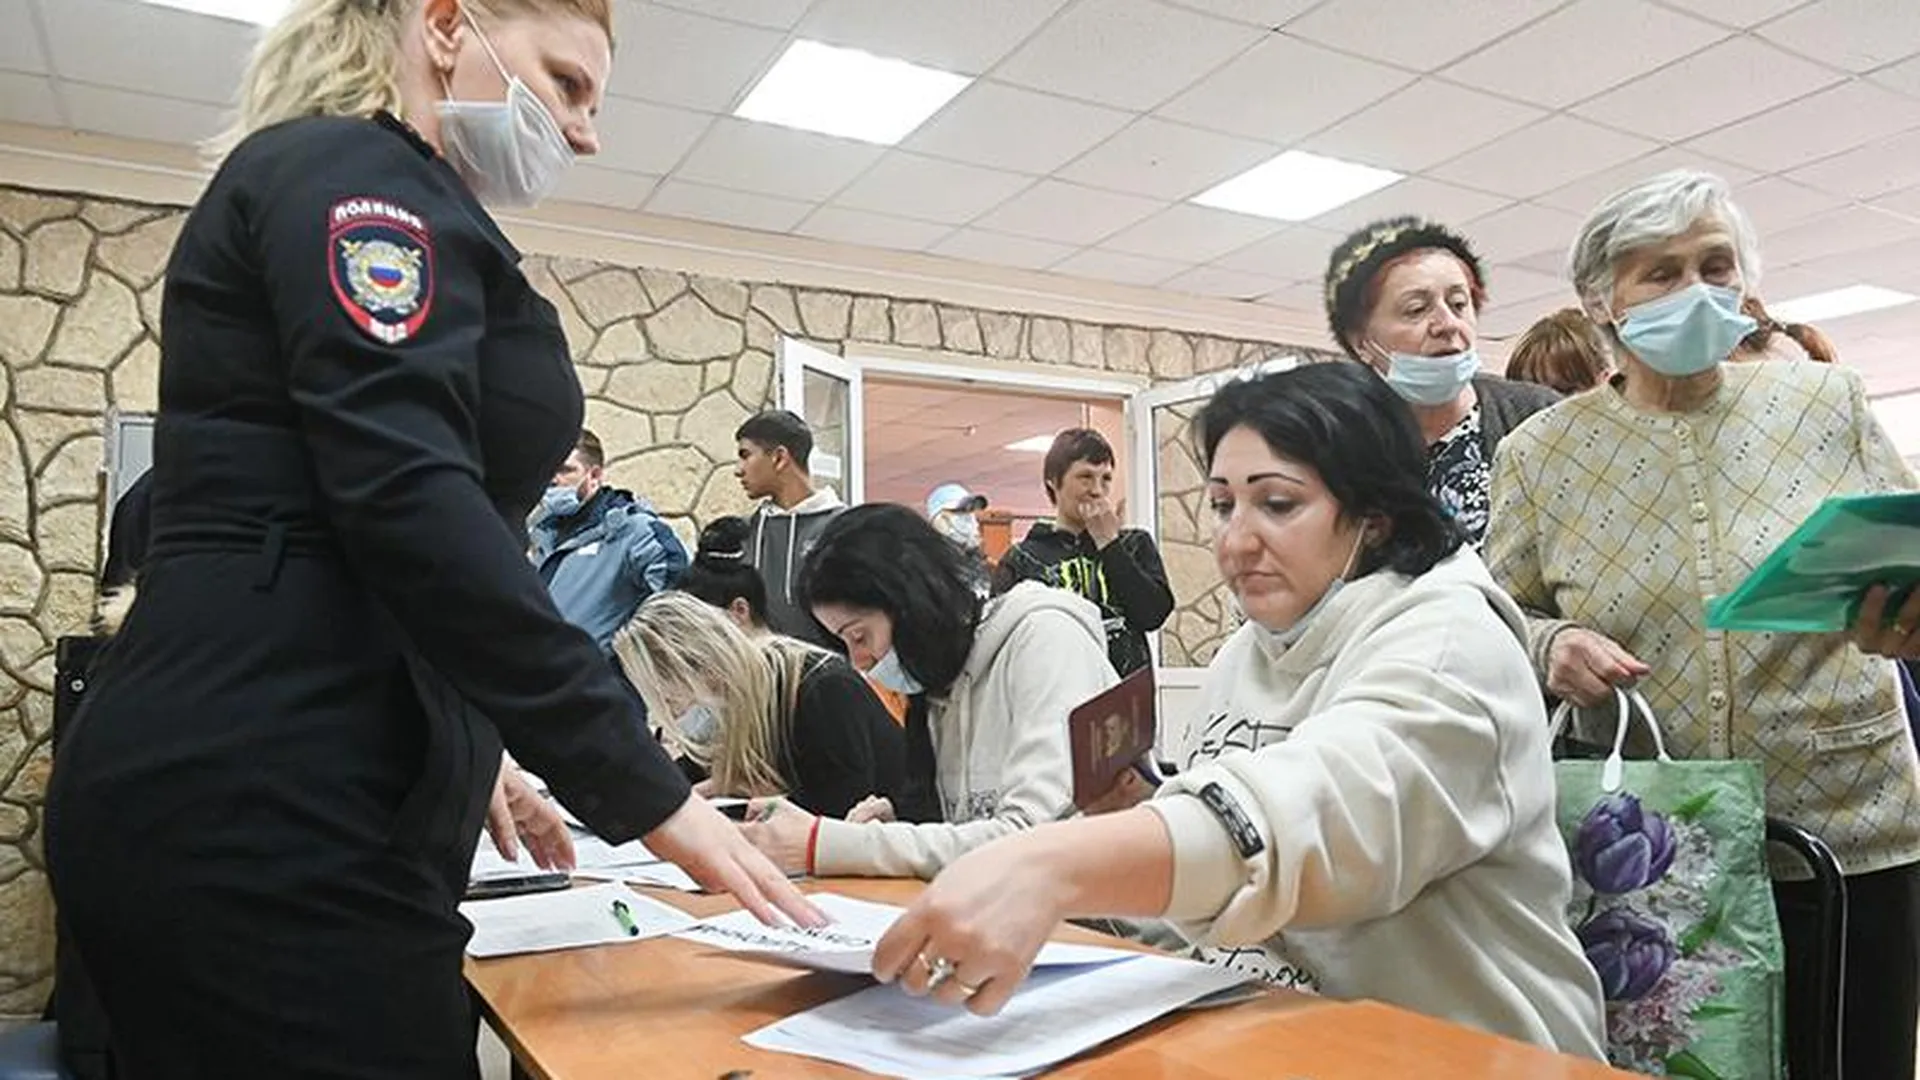 Ирина Фаевская: «Для заявления необходимы документы, удостоверяющие личность» 